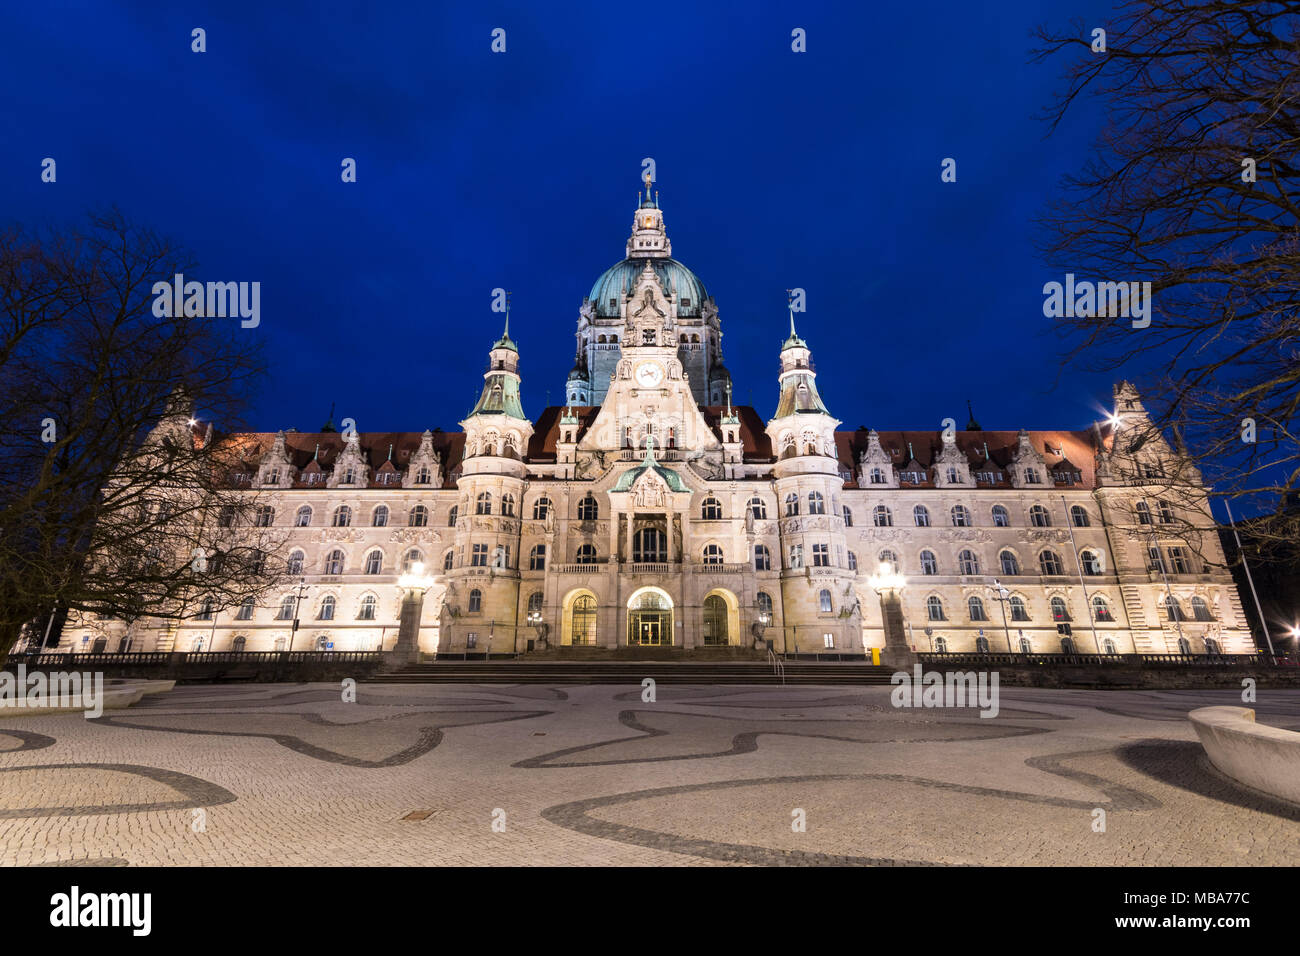 Hannover, Deutschland. Nacht Blick auf das Neue Rathaus (Neues Rathaus), eine prächtige Burg - wie City Hall der Ära von Wilhelm II. im eklektischen Stil Stockfoto